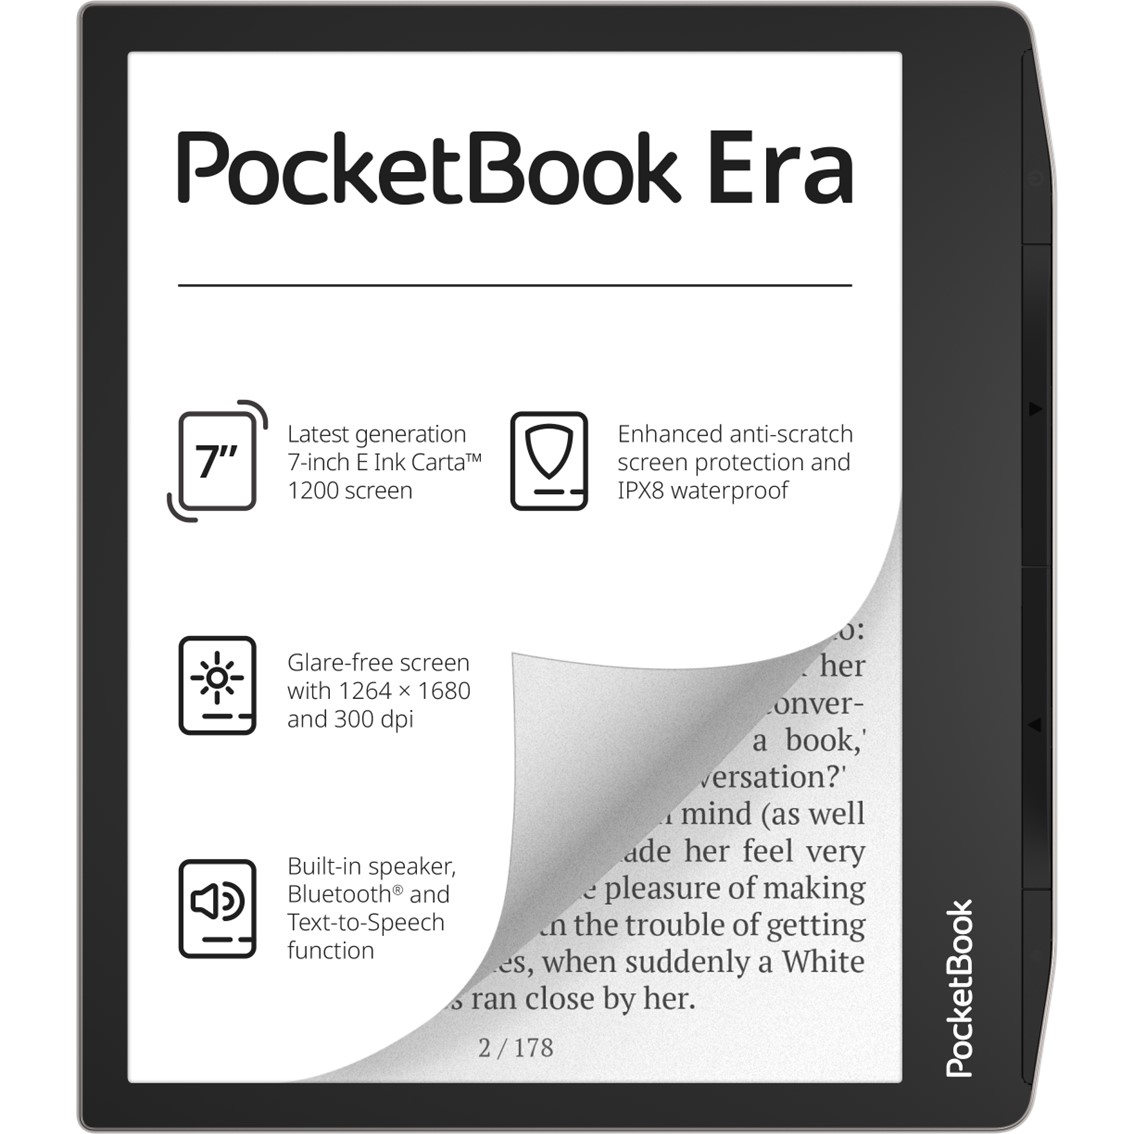 PocketBook InkPad X Pro Mist Grey / Lector de libros electrónicos y notas  10.3